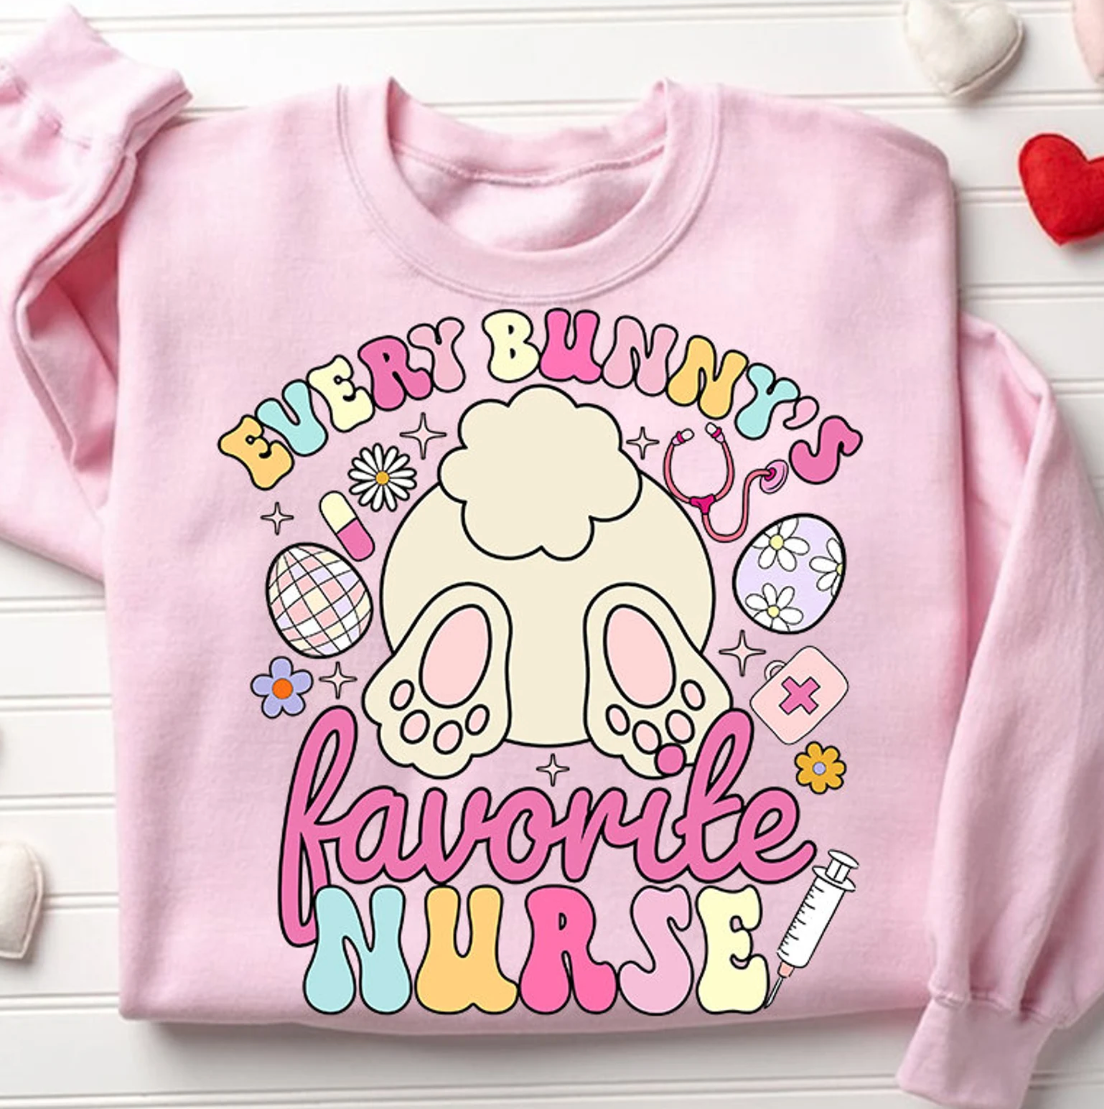 Every Bunny's Favorite Nurse